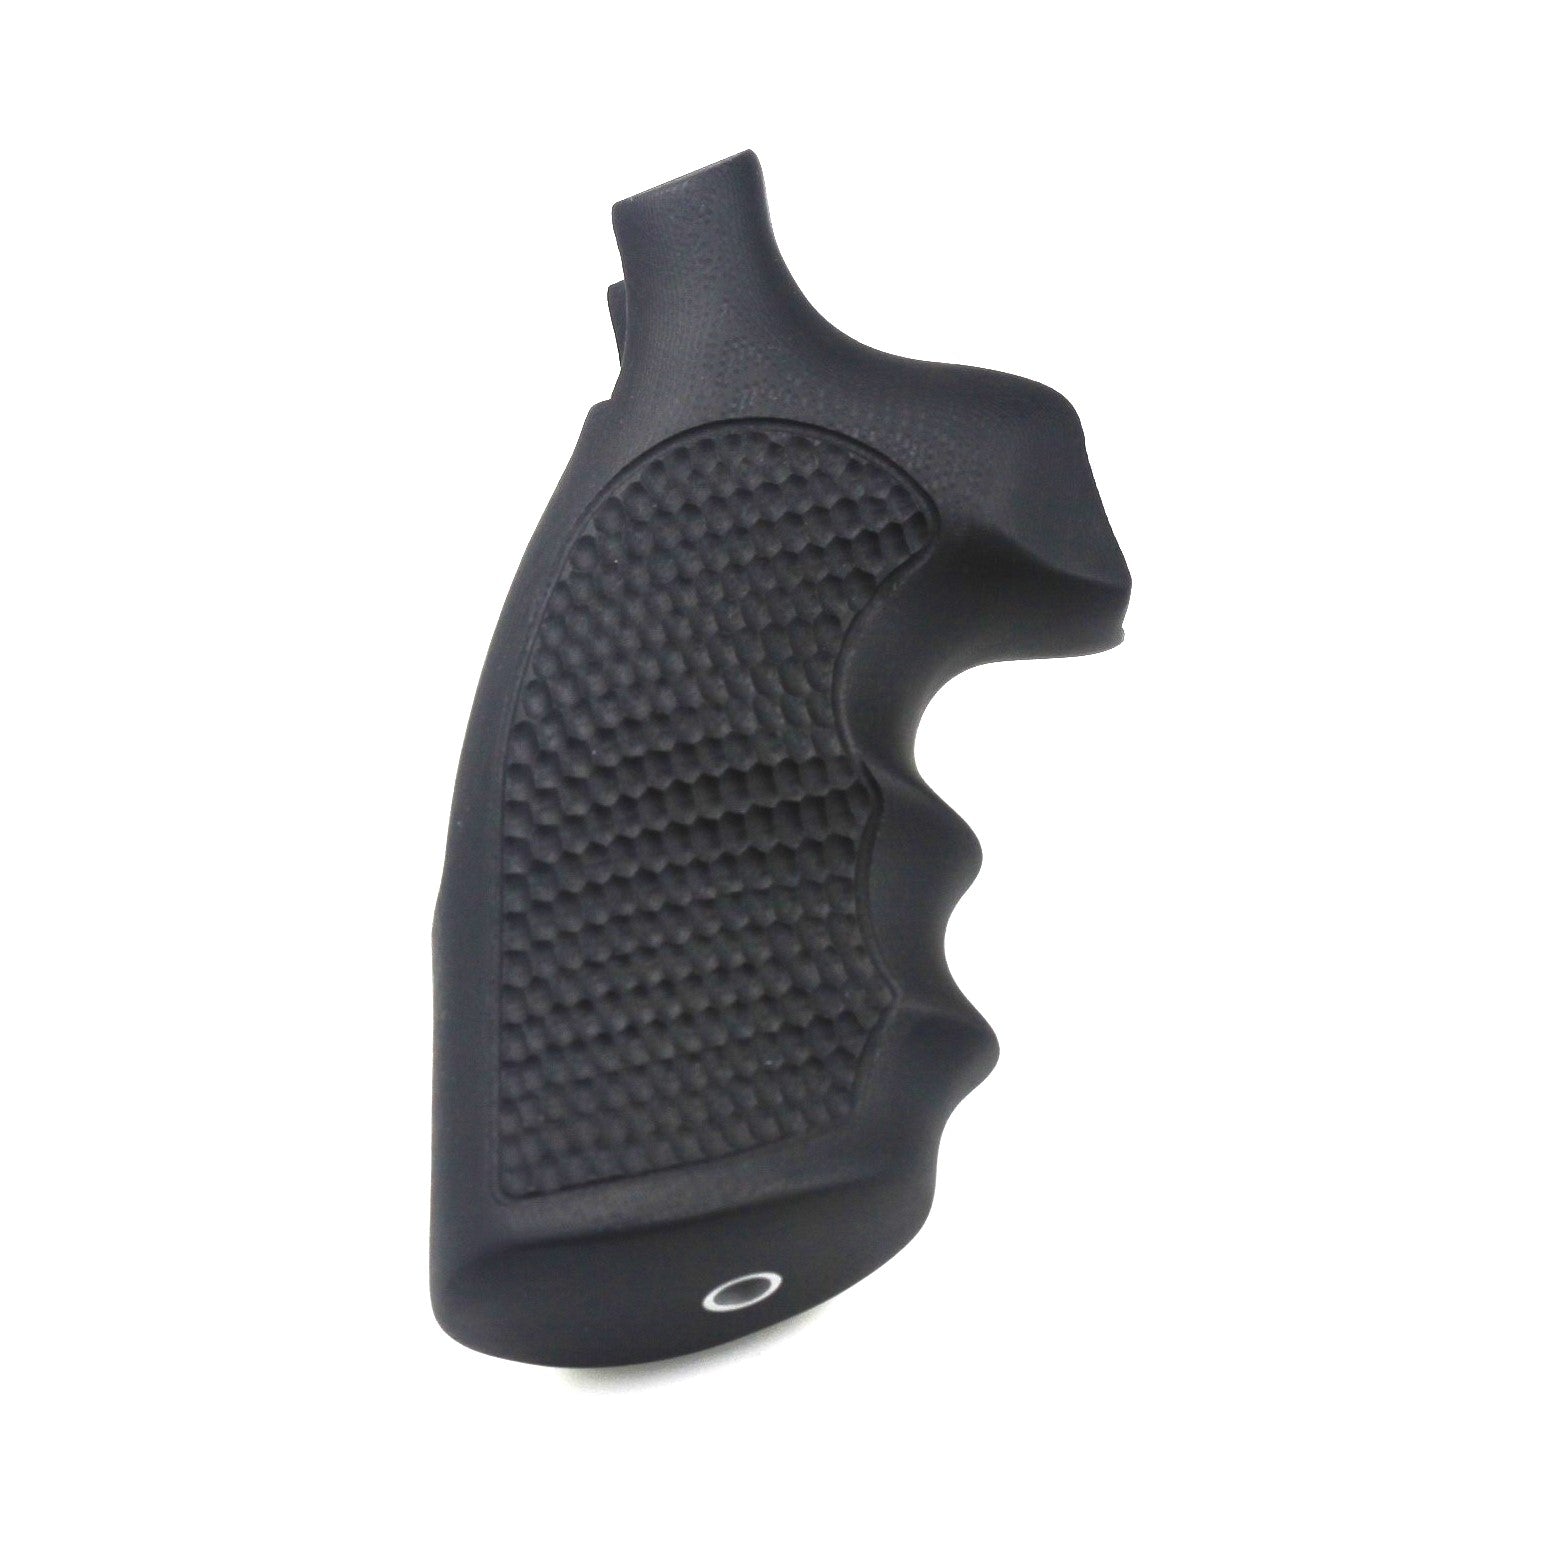 Hogue Smith & Wesson N Frame G10 Black Mascus Revolver Grip